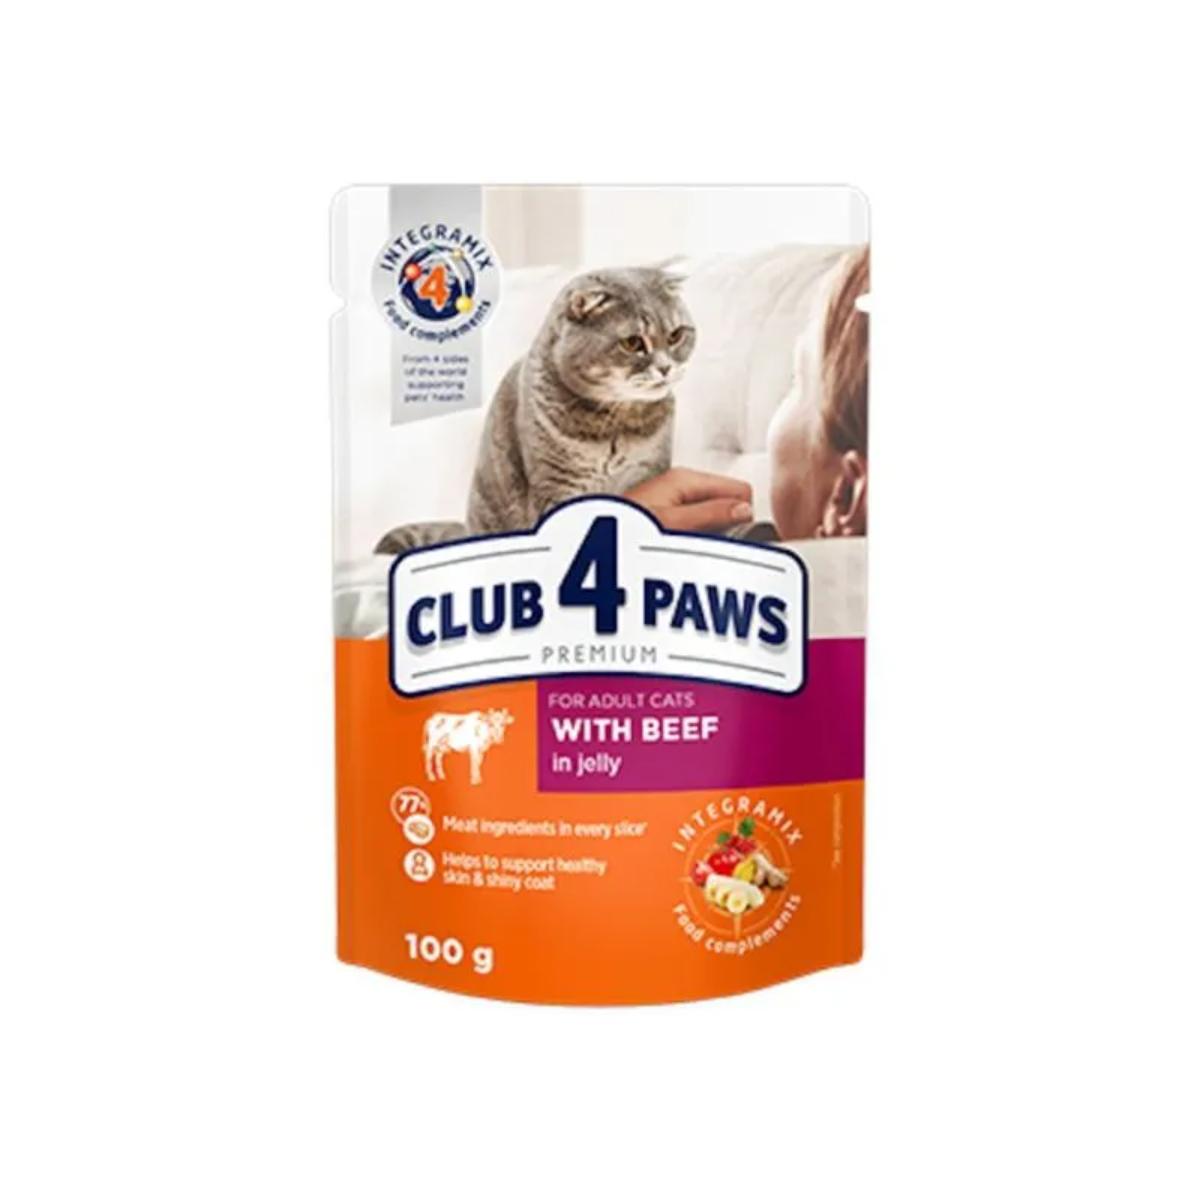 CLUB 4 PAWS Premium, Vită, hrană umedă pisici, Vită, (în sos) CLUB 4 PAWS Premium, Vită, plic hrană umedă pisici, (în sos), bax, 100g x 24